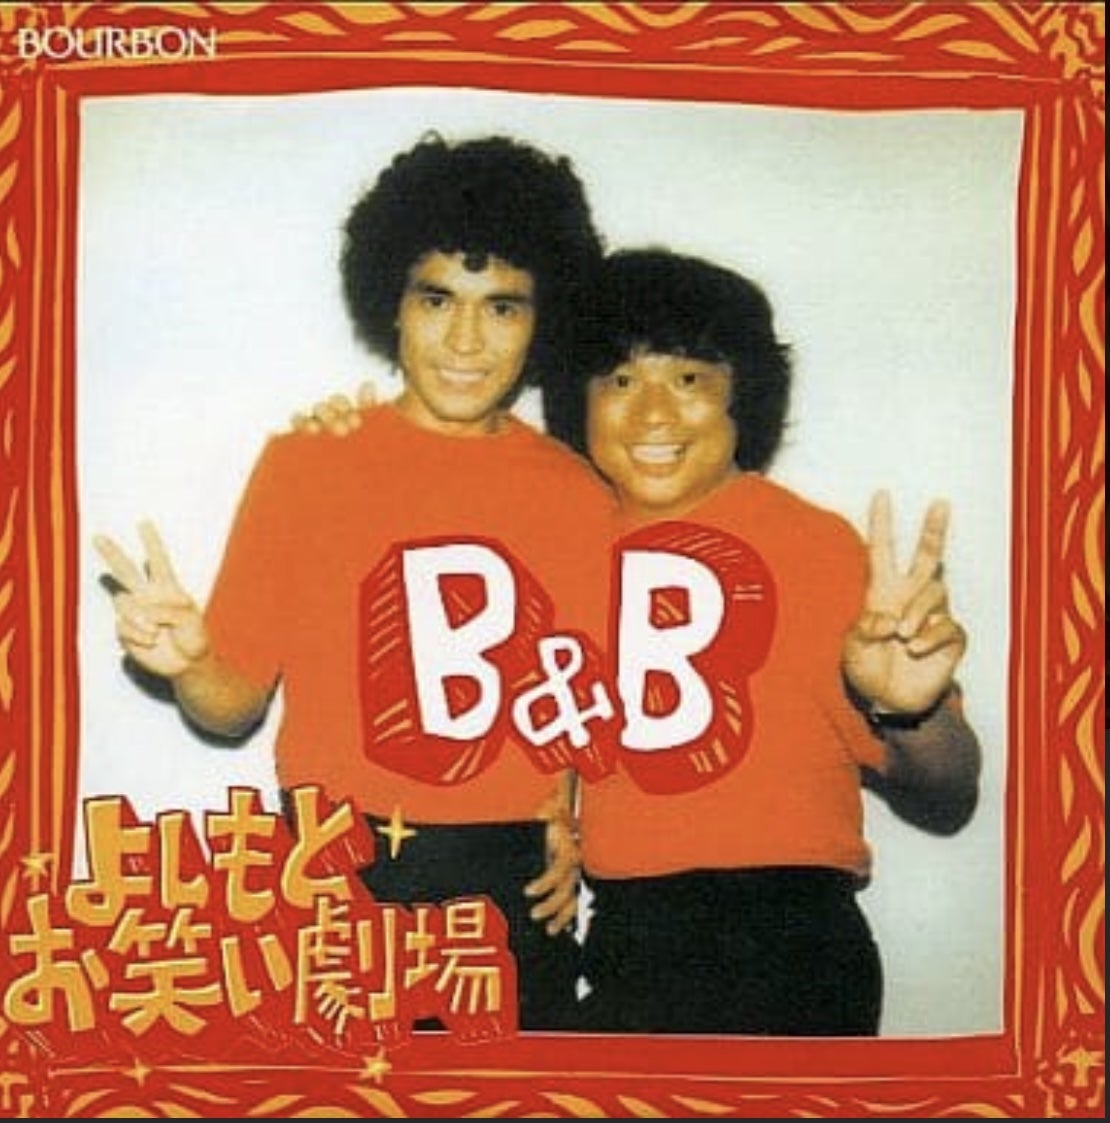 ブルボン よしもとお笑い劇場4『B&B』（※澤田隆治プロデュース